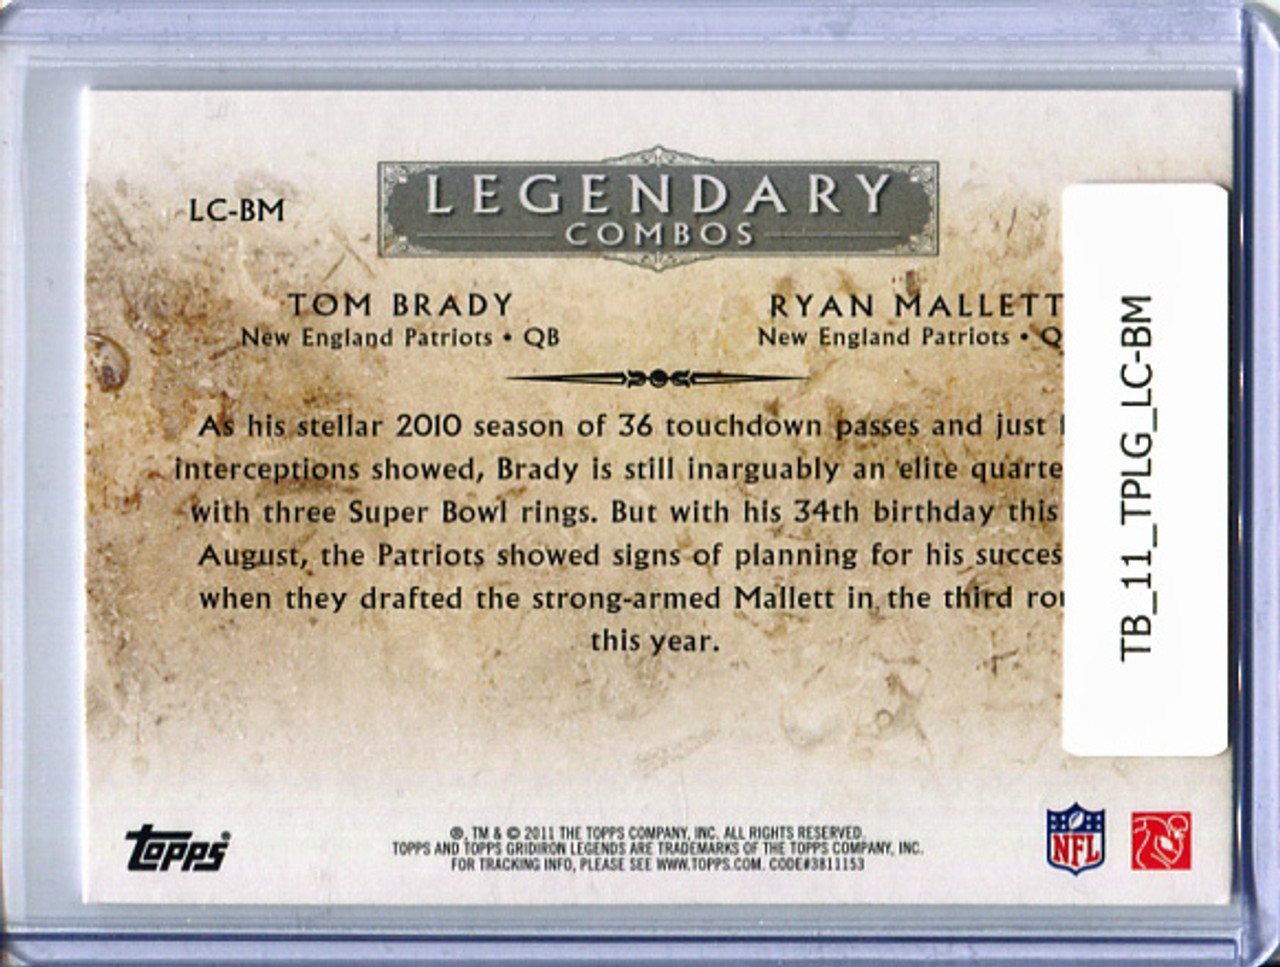 Tom Brady, Ryan Mallett 2011 Topps Legends, Legendary Combos #LC-BM